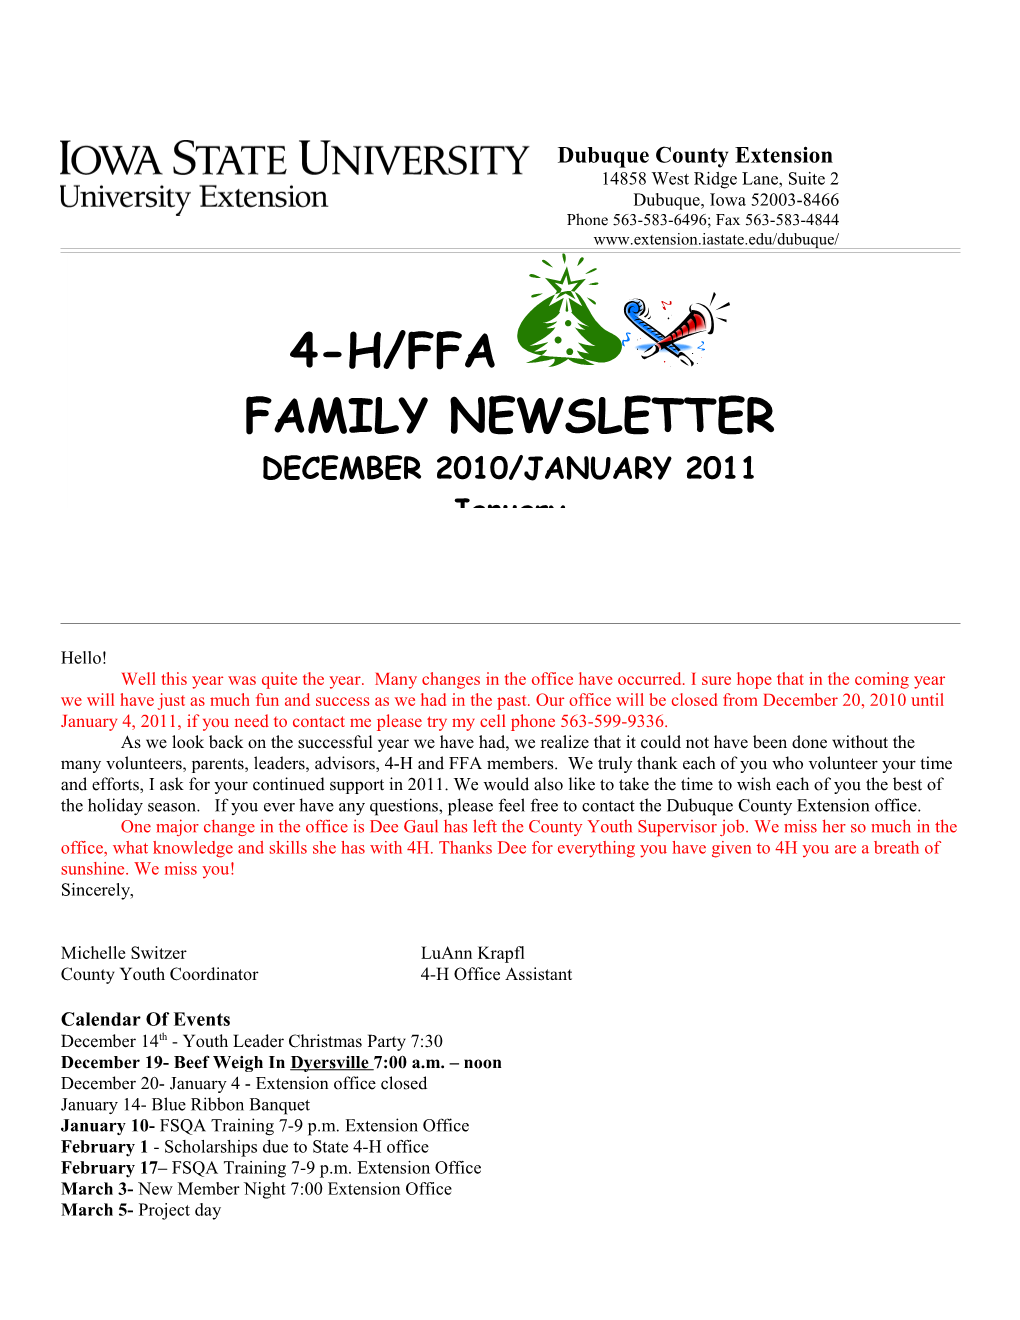 4-H/FFA Family Newsletter